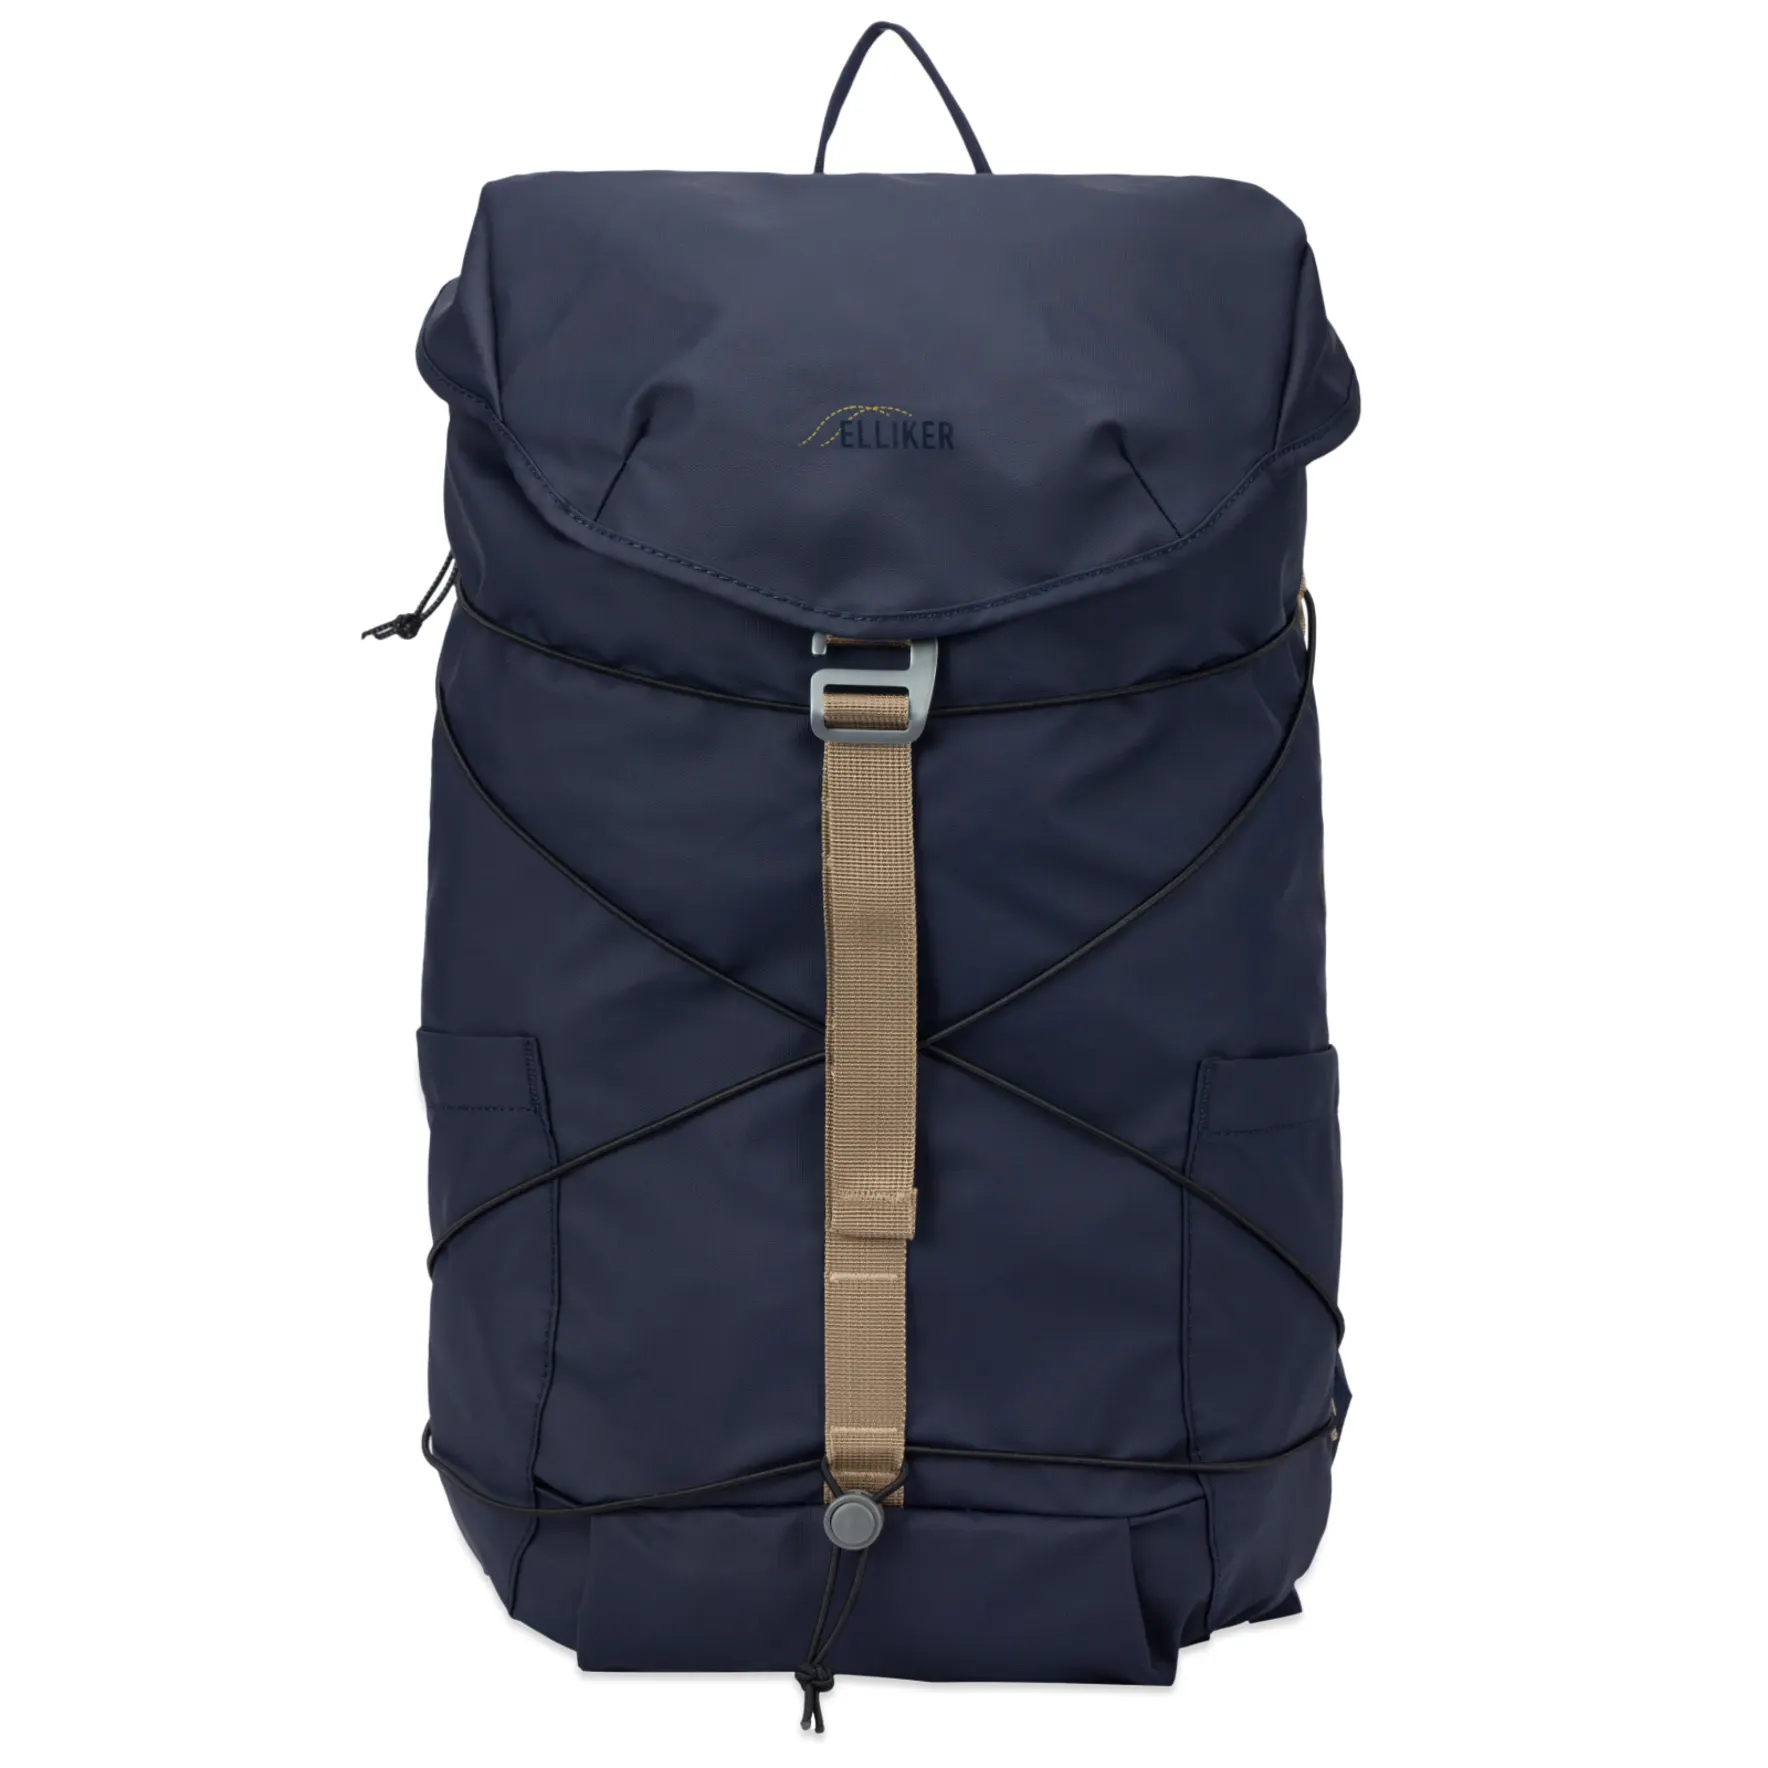 Рюкзак Elliker Wharfe Flapover Backpack, темно-синий